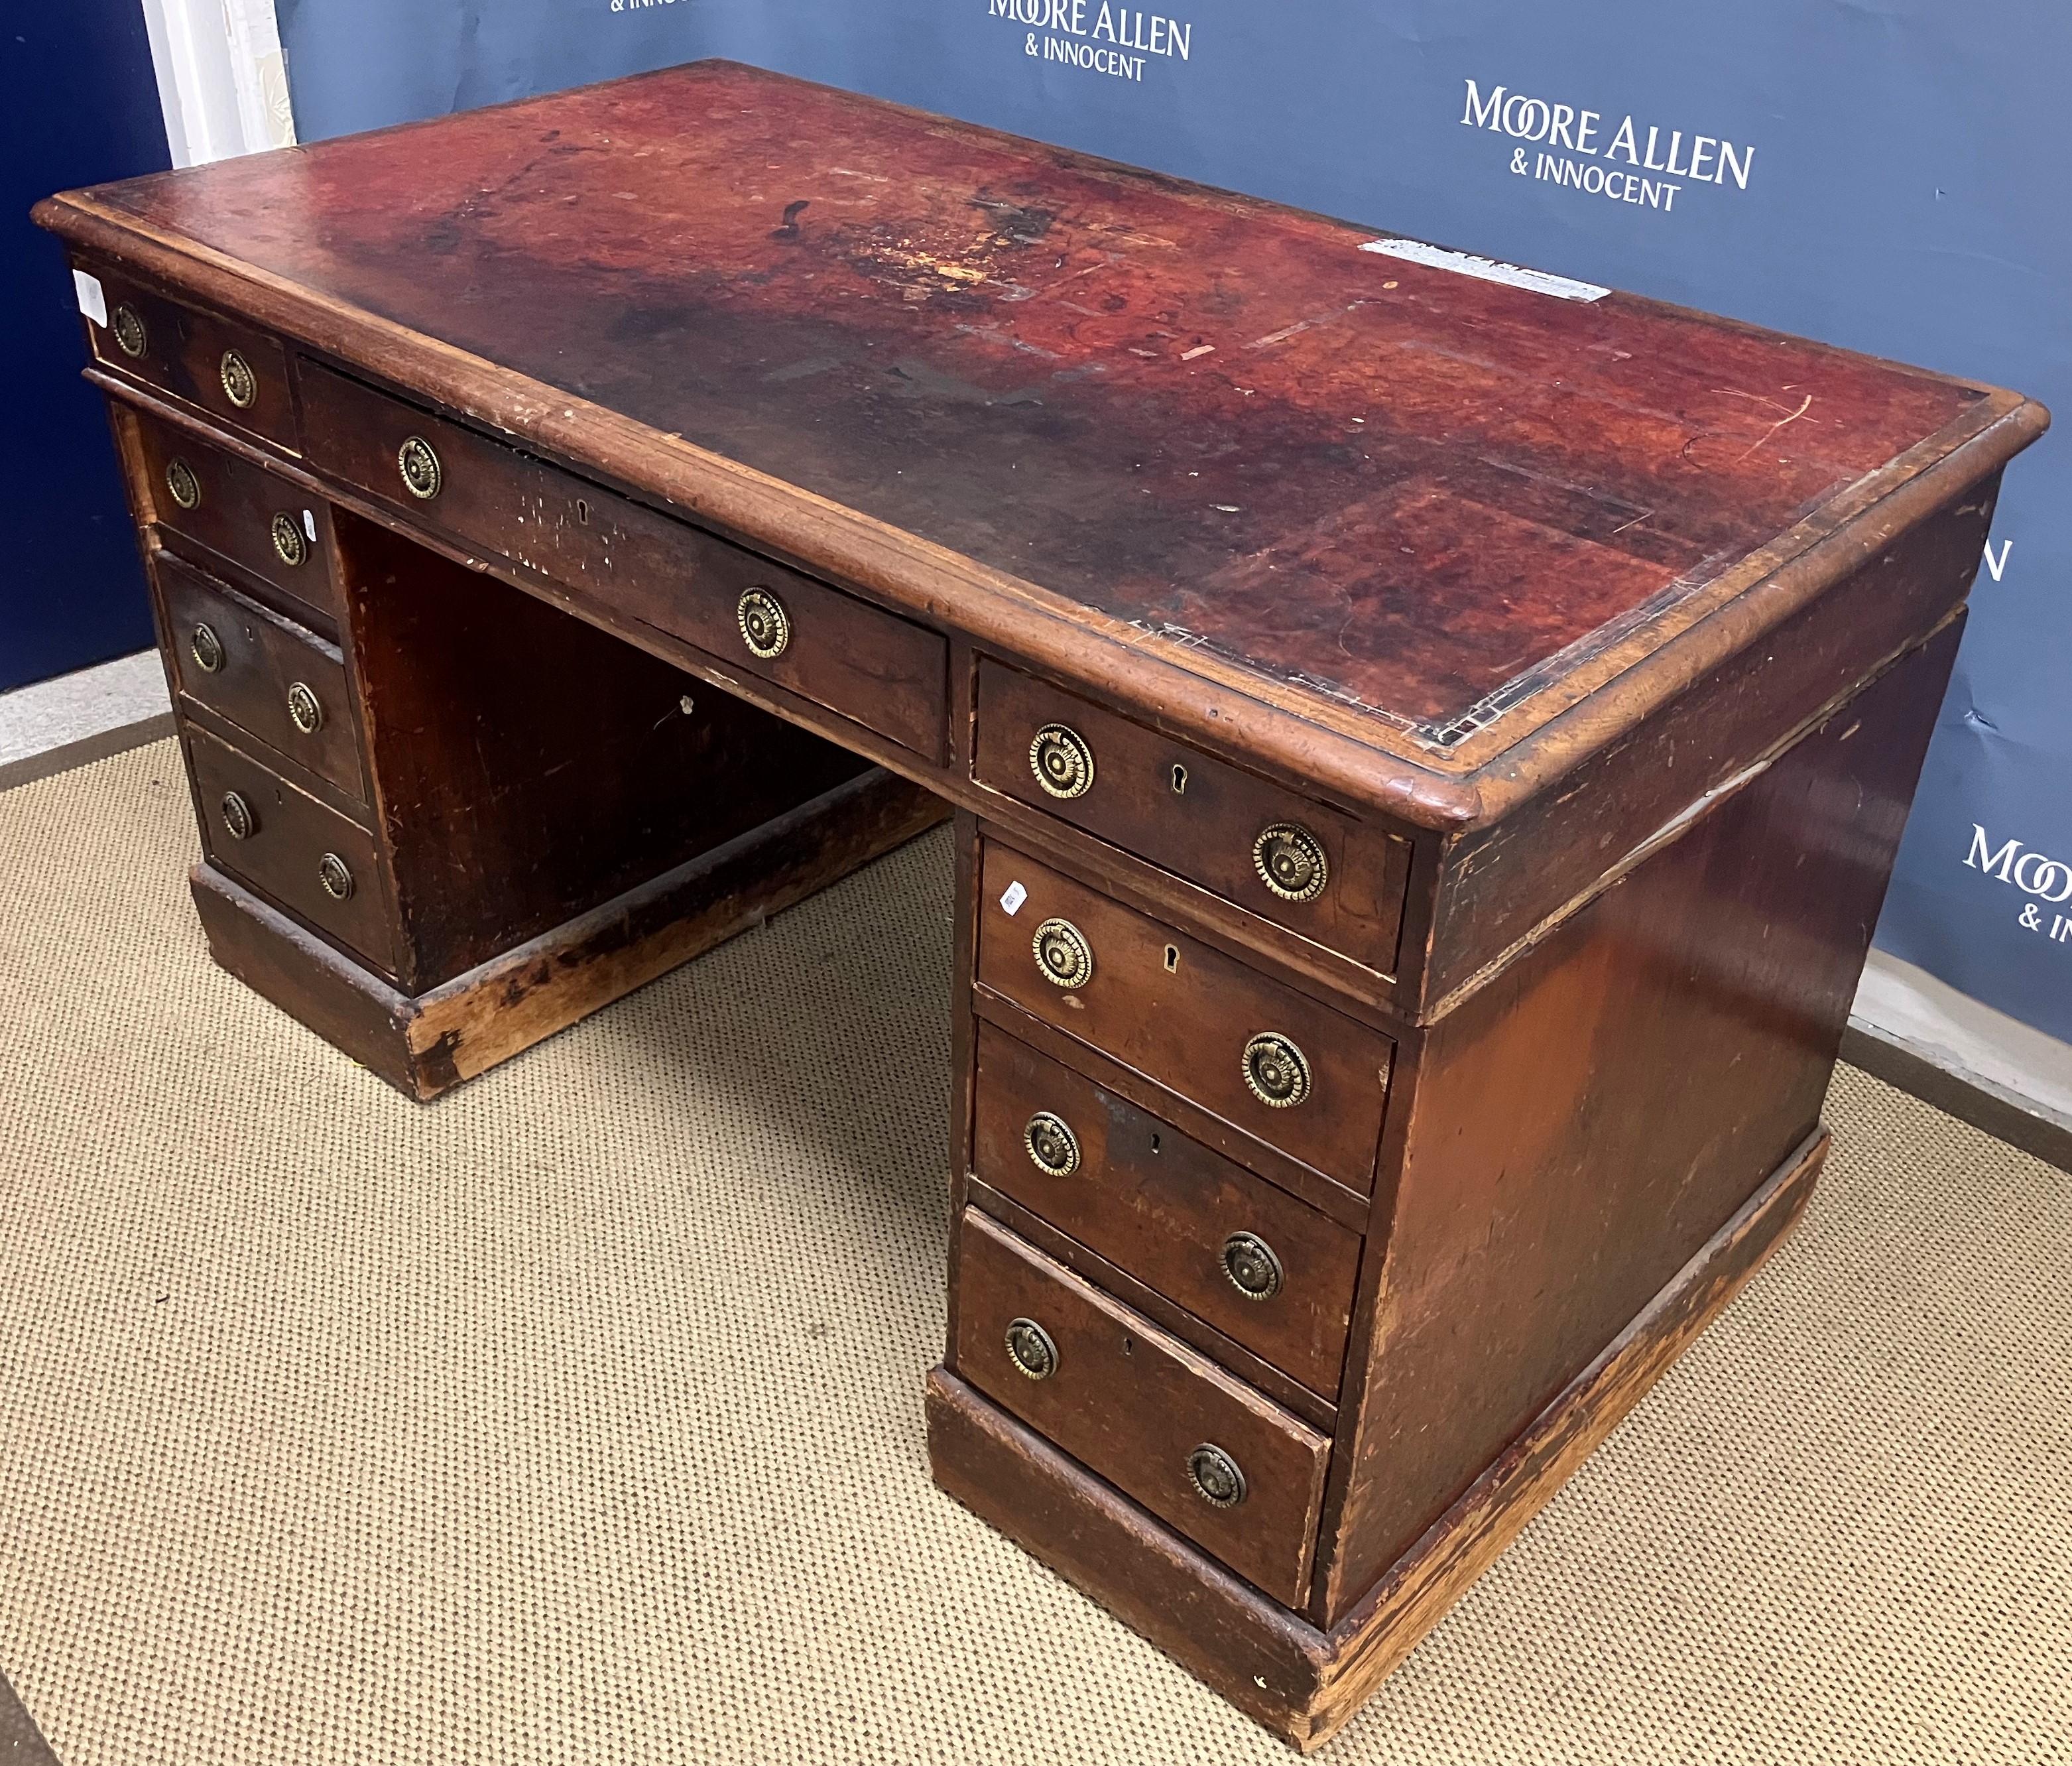 A Victorian mahogany double pedestal desk,